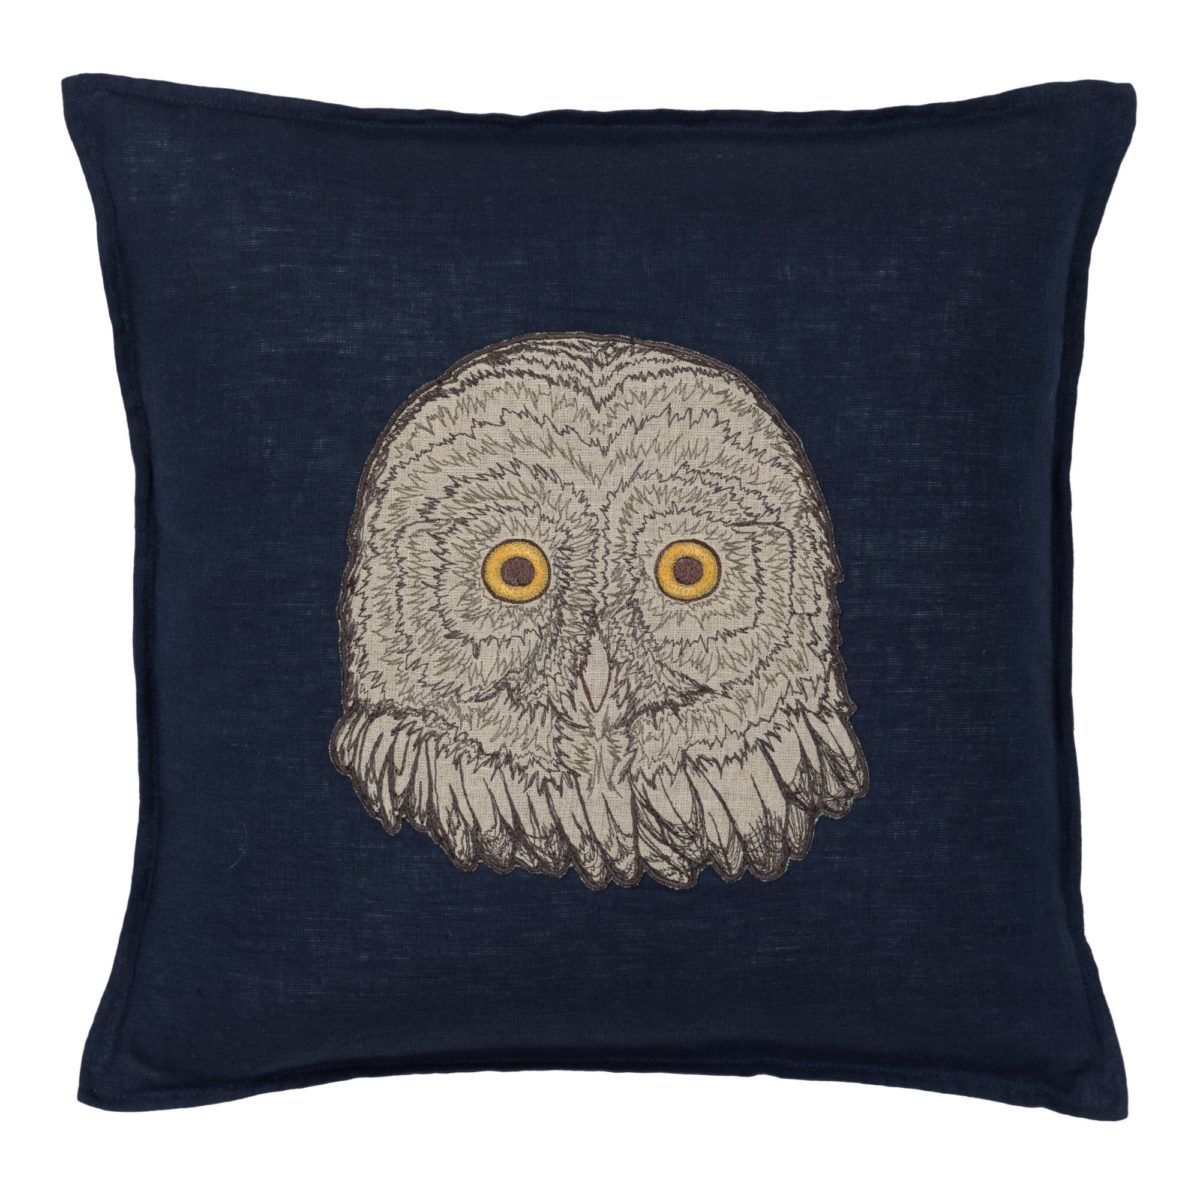 Owl Applique